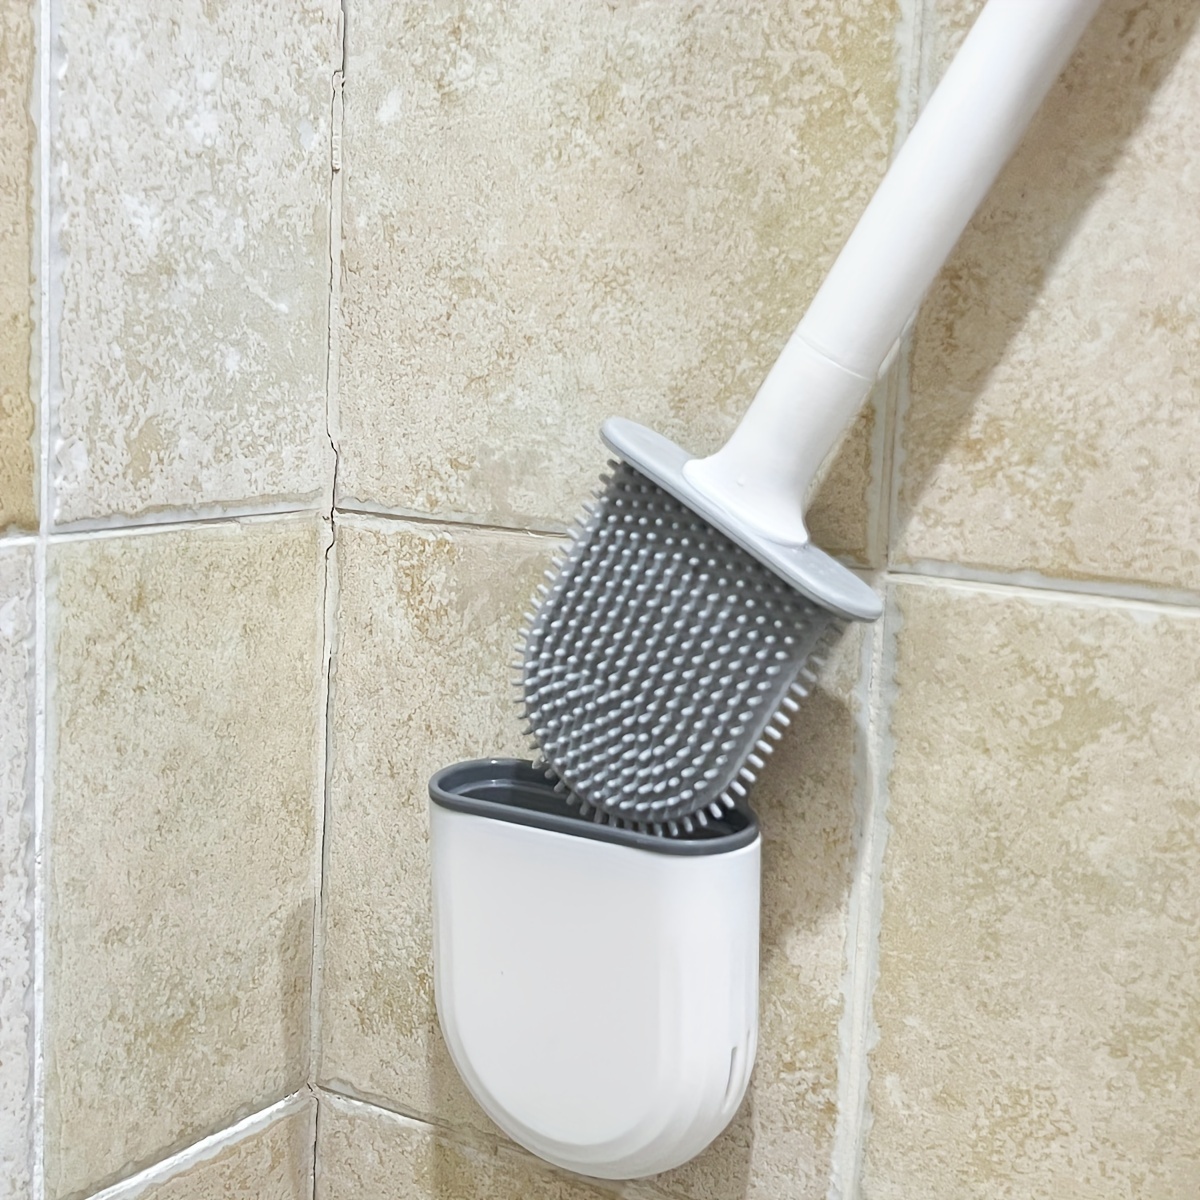 Brosse et support pour cuvette de toilette. Colour: grey, Fr